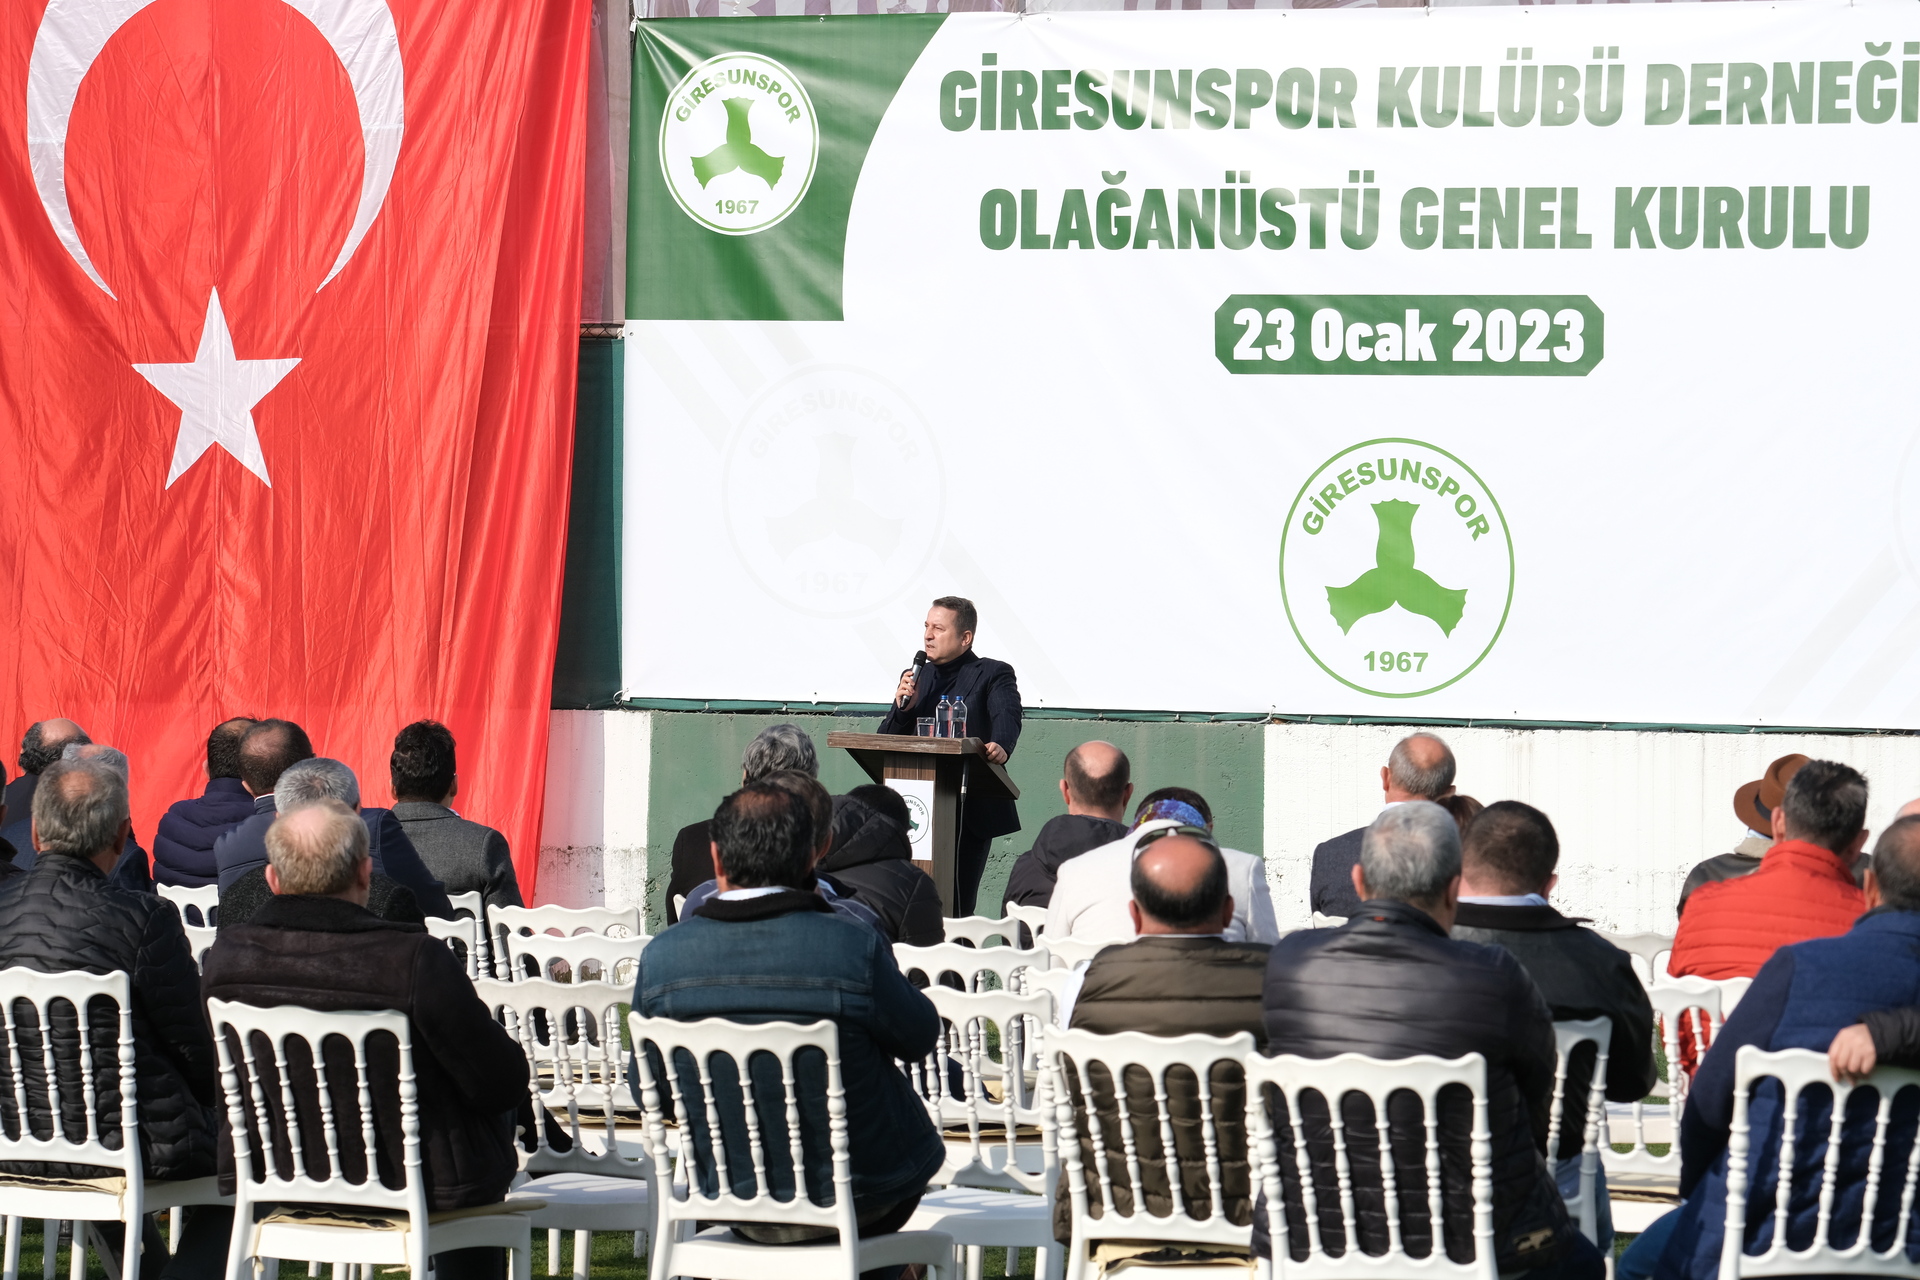 Giresunspor’da Olağanüstü Genel Kurul Toplantısı Gerçekleştirildi